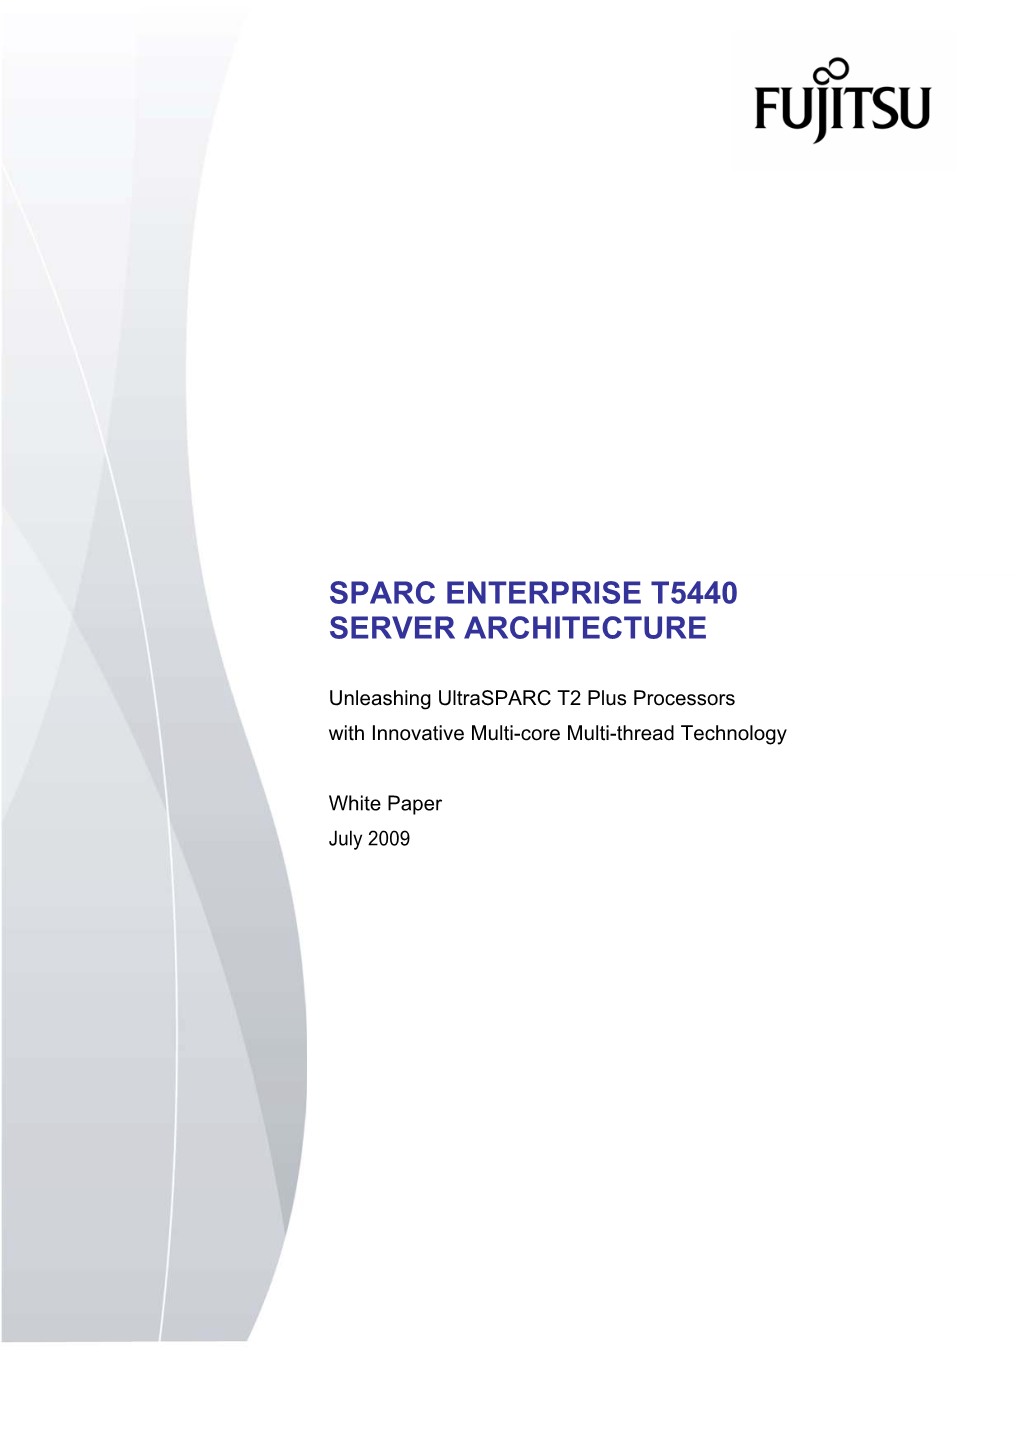 Sparc Enterprise T5440 Server Architecture